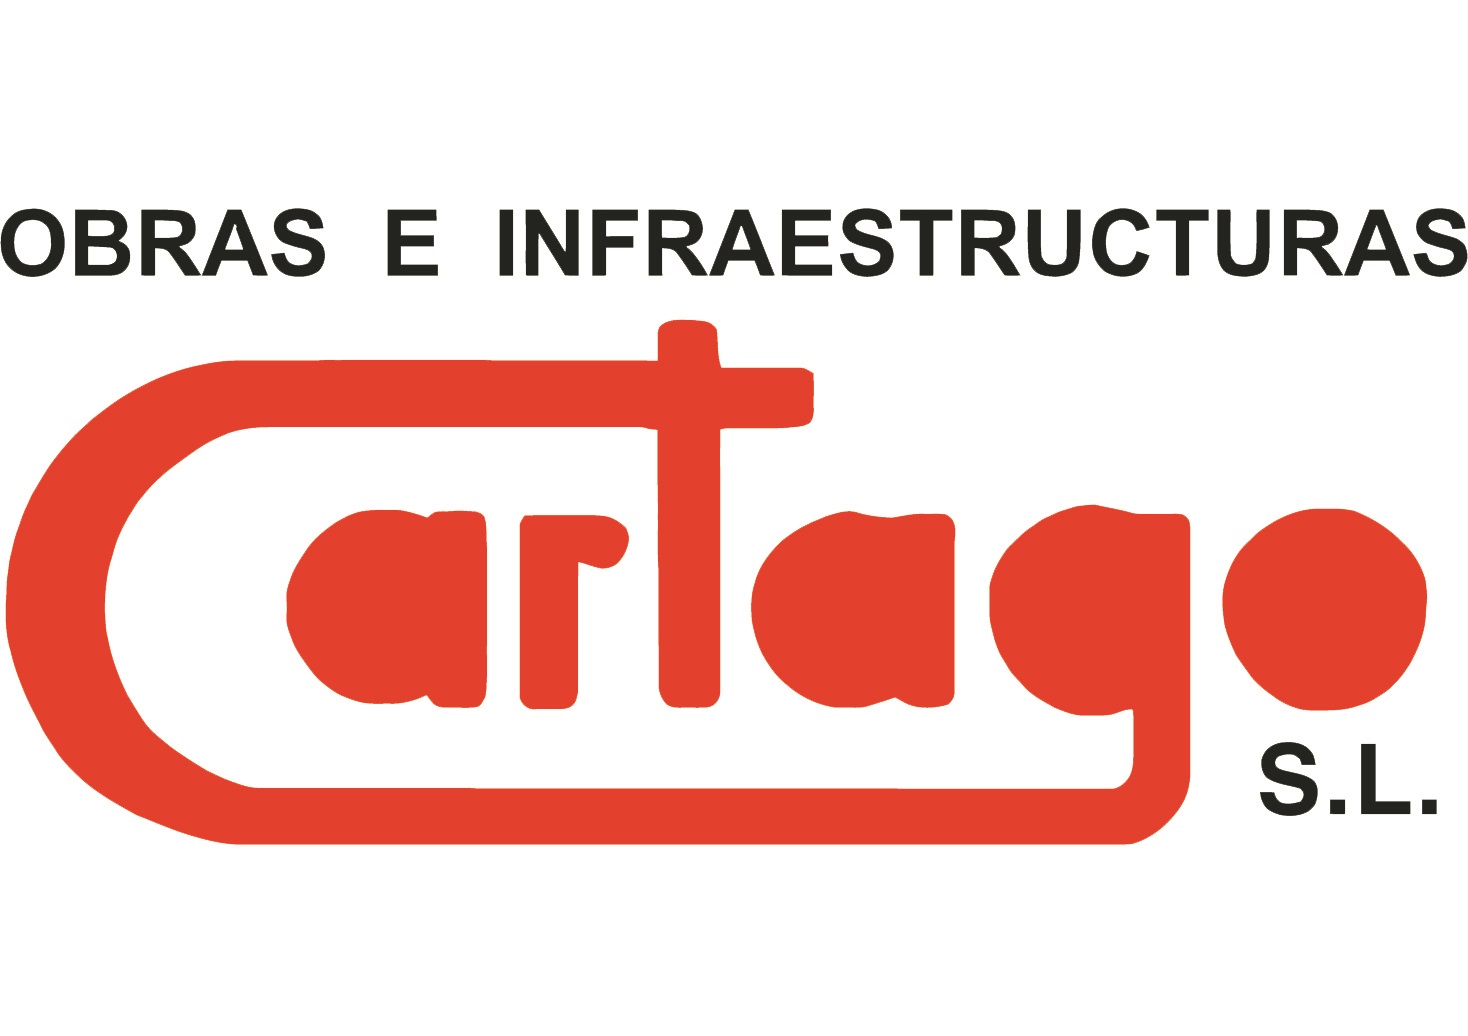 POLIGONO CARTAGO (BAÑOS Y MENDIGO) - Estructuras metálicas, construcción de estructuras metálicas, construcción de naves industriales, construcciones industriales